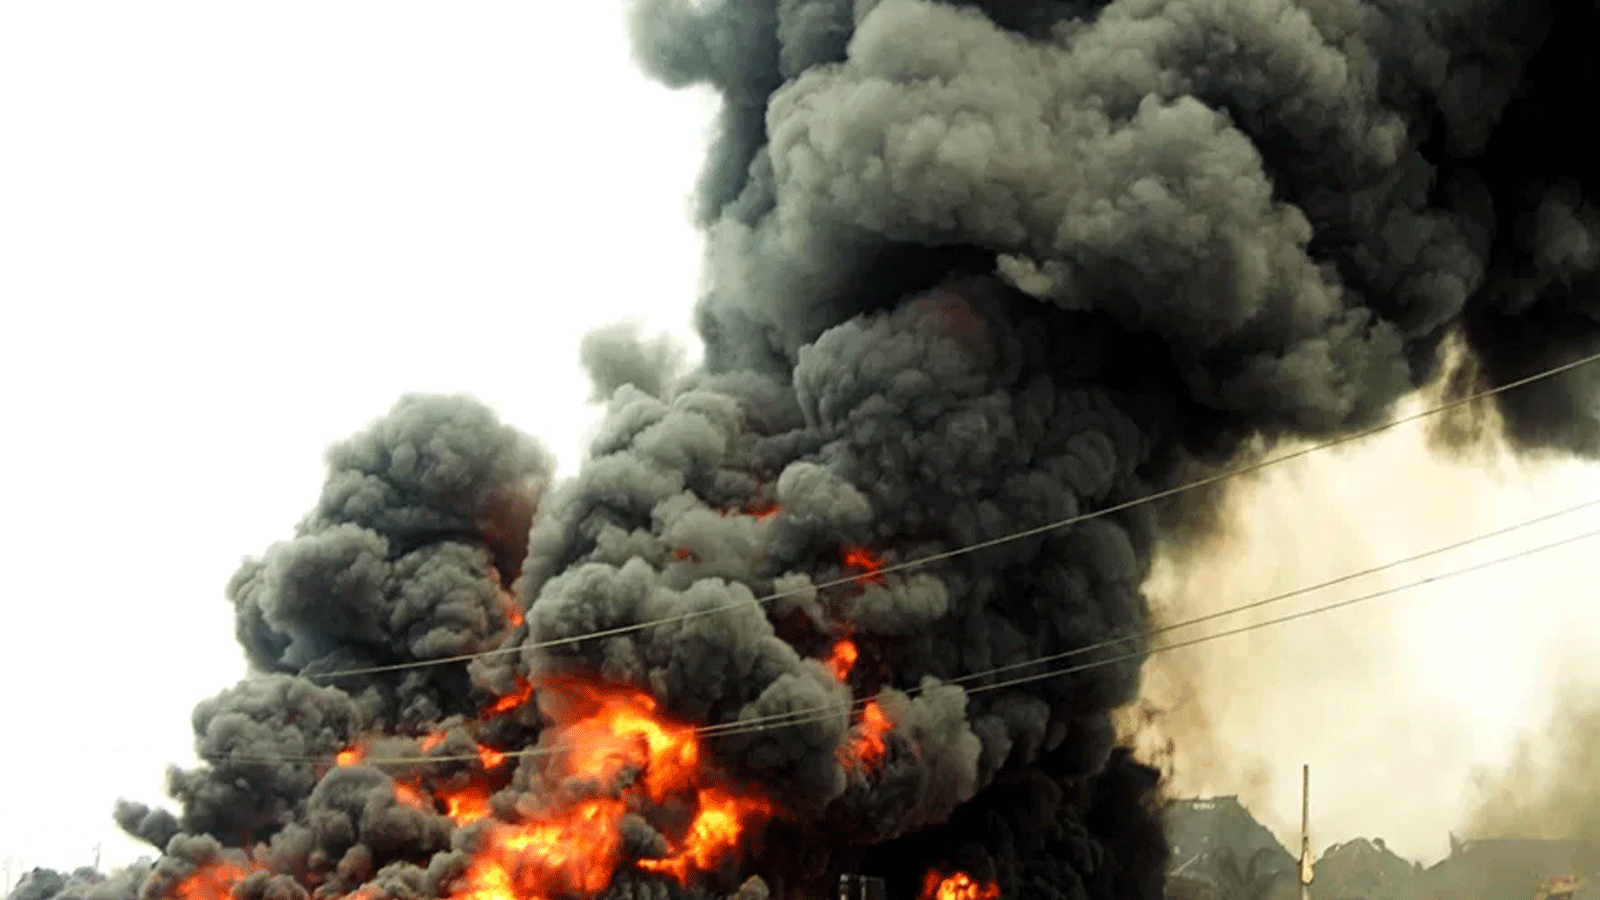 انفجار قنبلة في منطقة وسط نيجيريا يقتل 27 من الرعاة ويصيب آخرين، في منطقة تشتهر بالتوترات العرقية والدينية